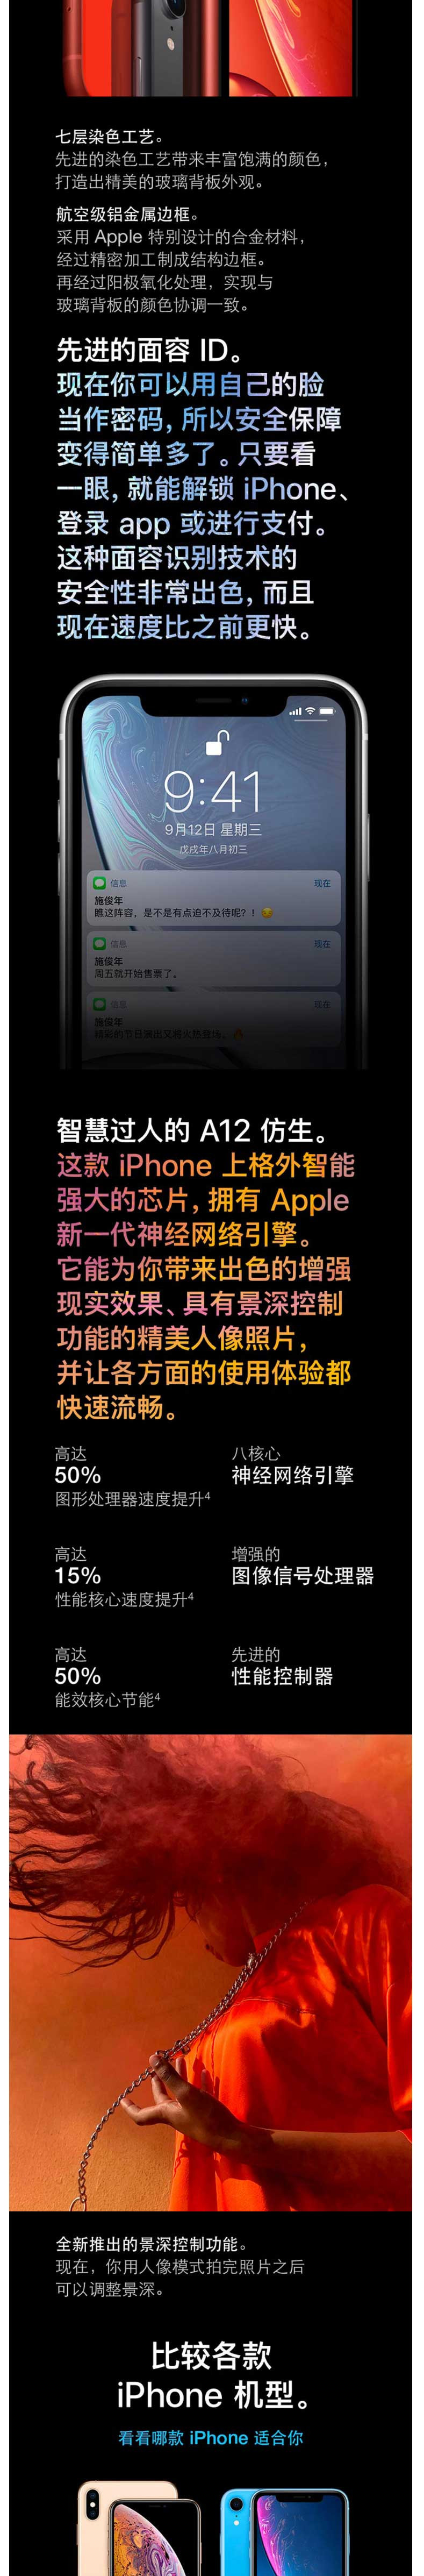 苹果/APPLE iPhone XR （黄色）128GB 移动联通电信4G全网通手机